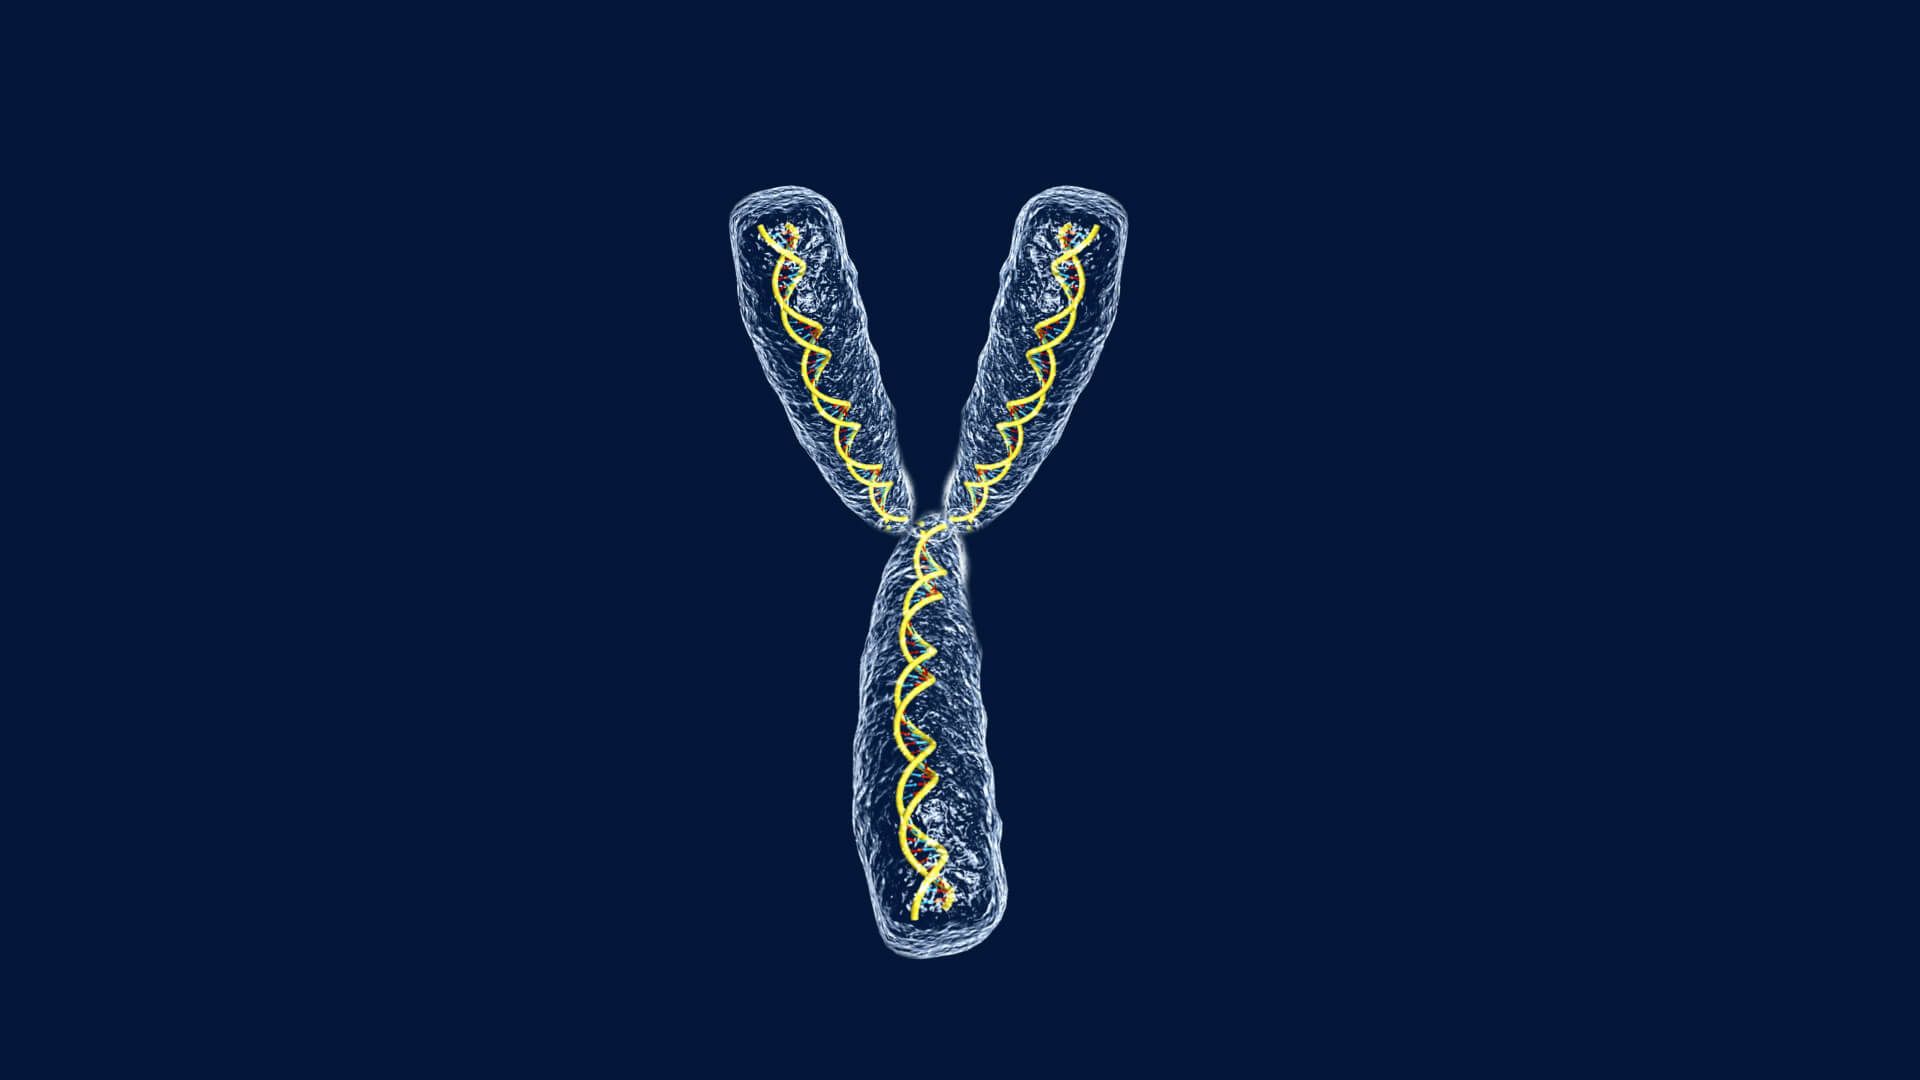 مرجع متخصصين ايران كروموزم / chromosome